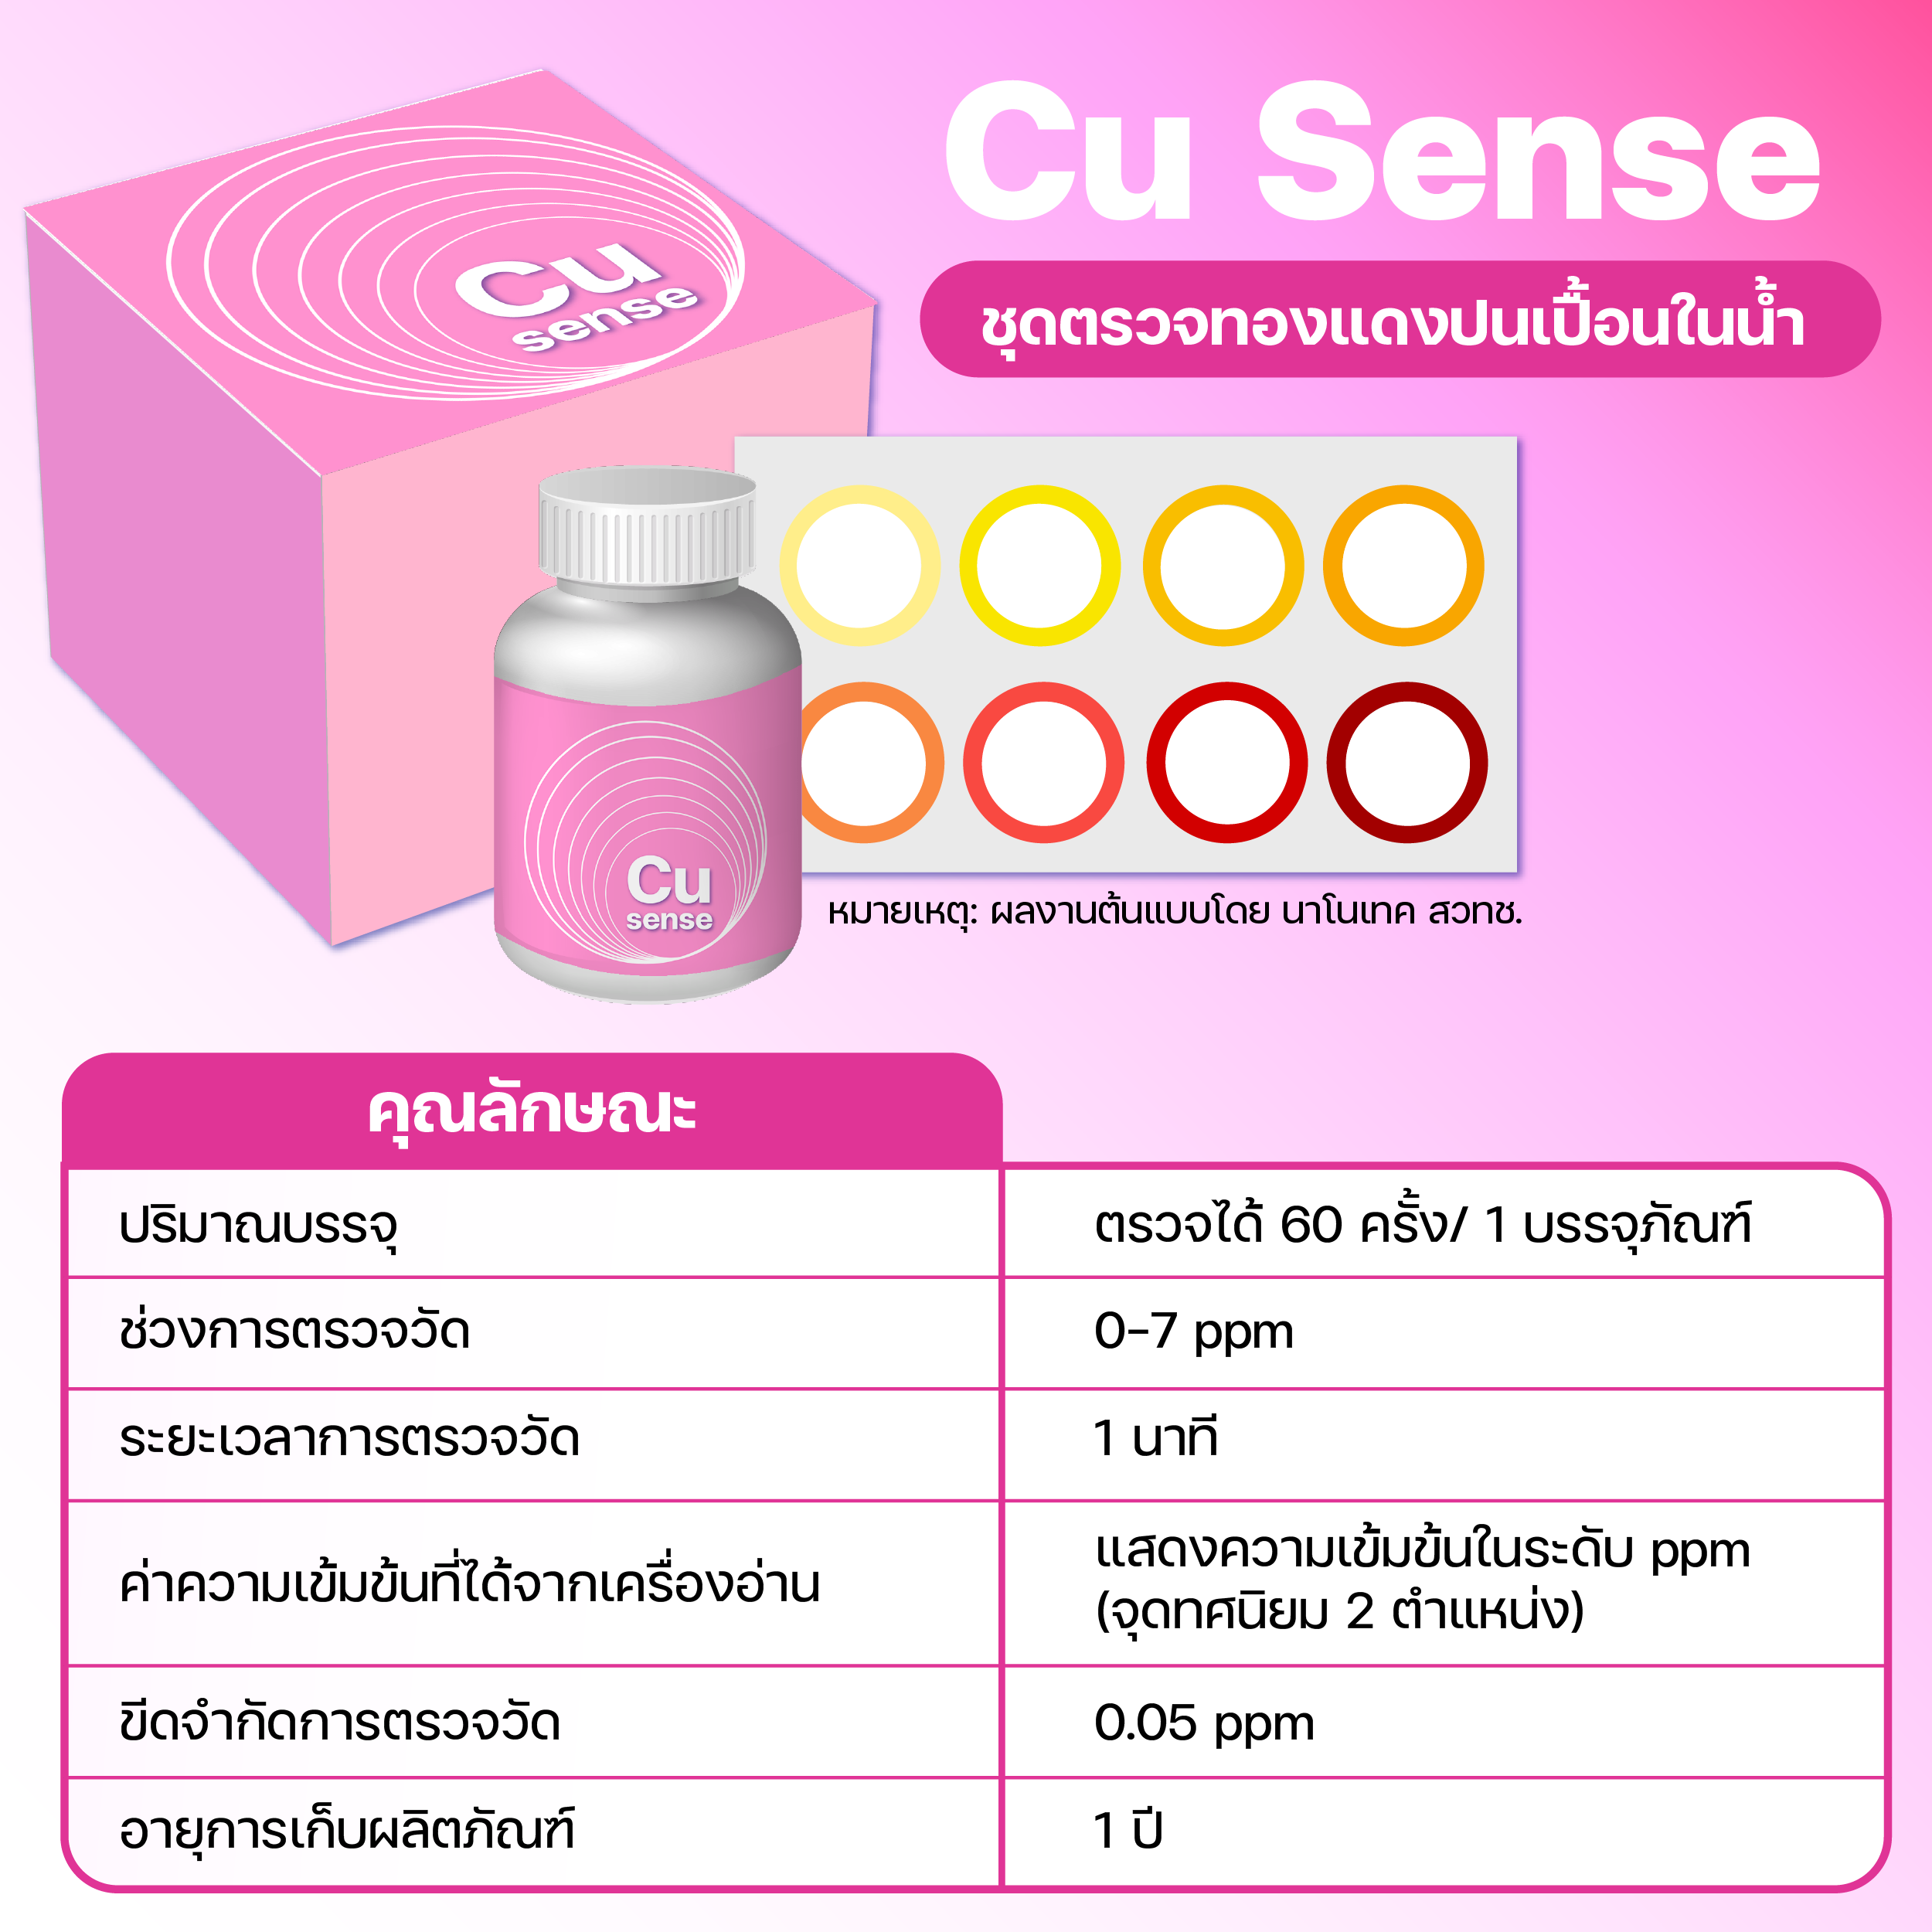 ‘M Sense’ ชุดตรวจโลหะปนเปื้อนในน้ำ ลดค่าตรวจ เพิ่มคุณภาพน้ำกินน้ำใช้ให้ประชาชนไทย